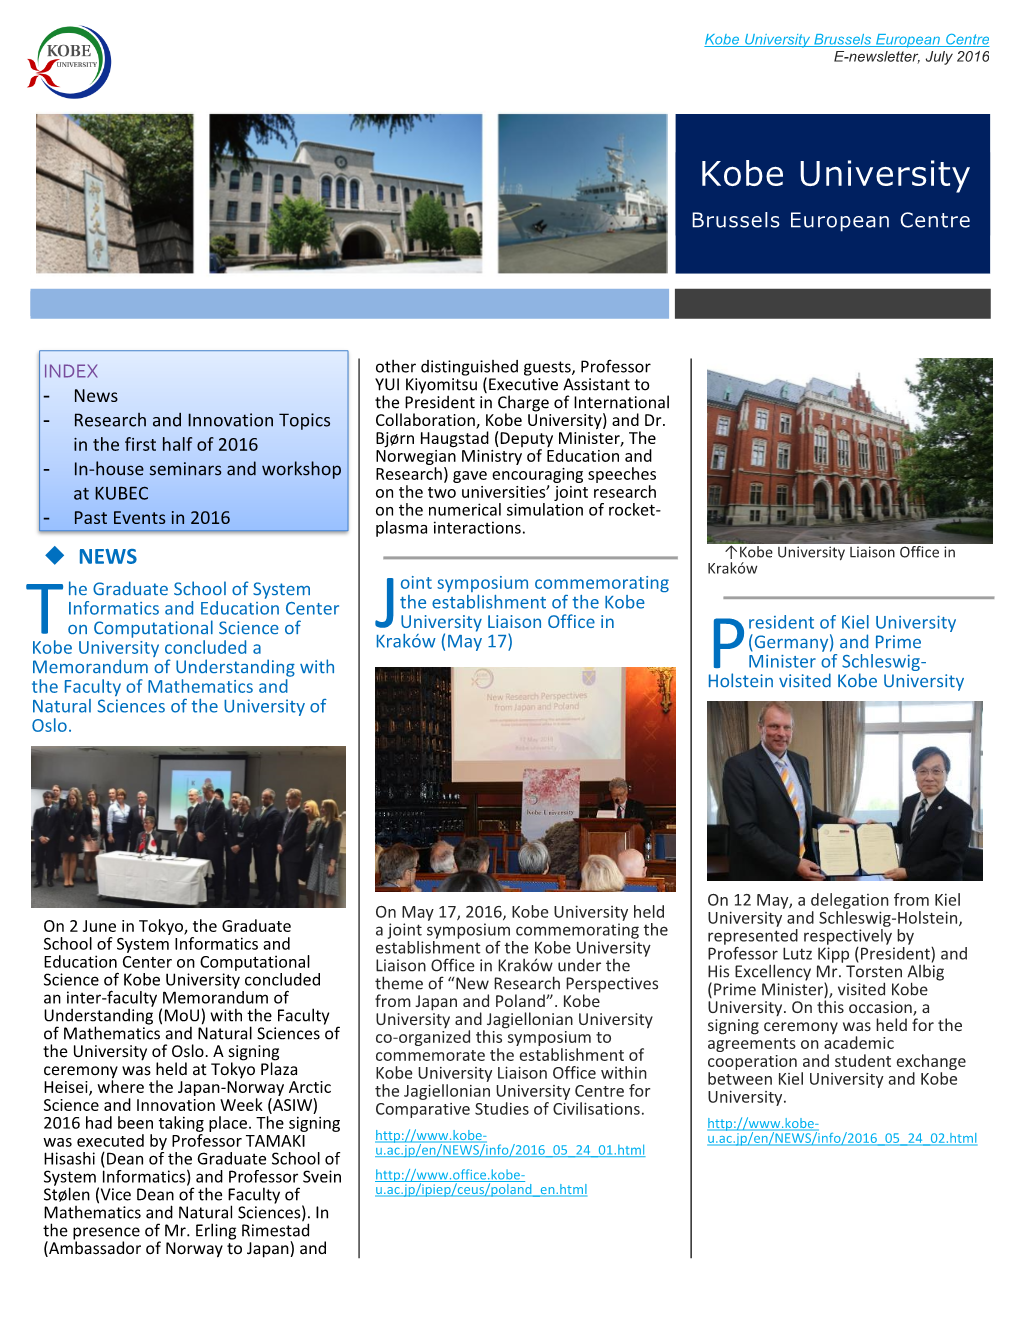 Kobe University Brussels European Centre E-Newsletter 2016.07